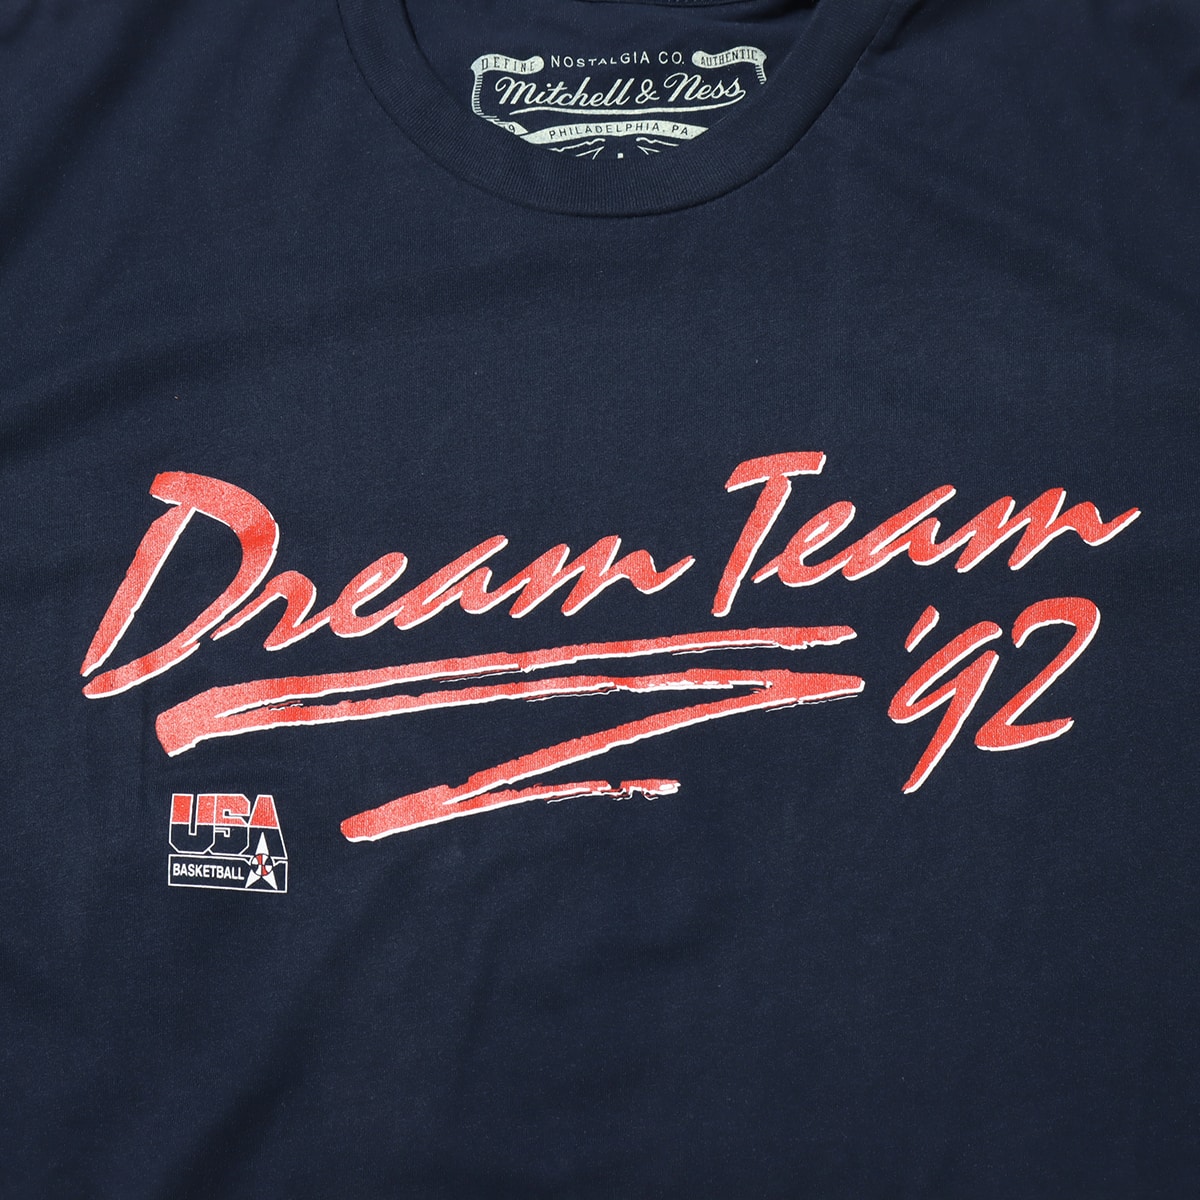 Mitchell & Ness 1992 DREAM TEAM TEE NAVY 20SU-I